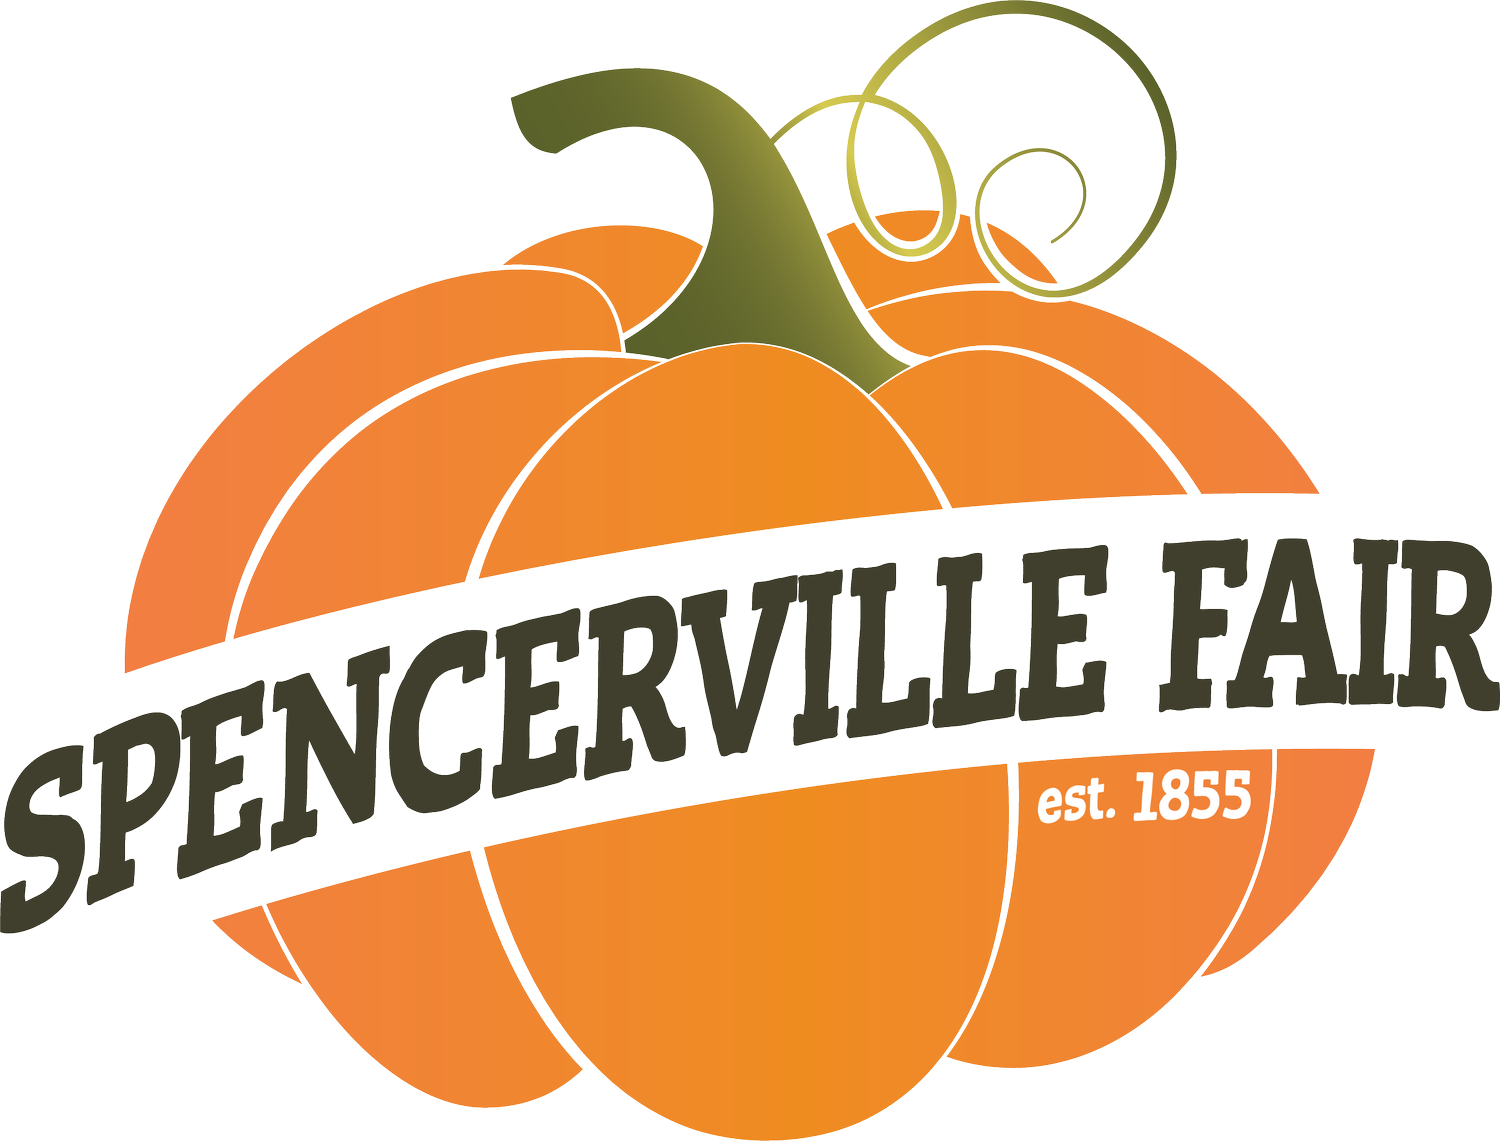 Spencerville Fair